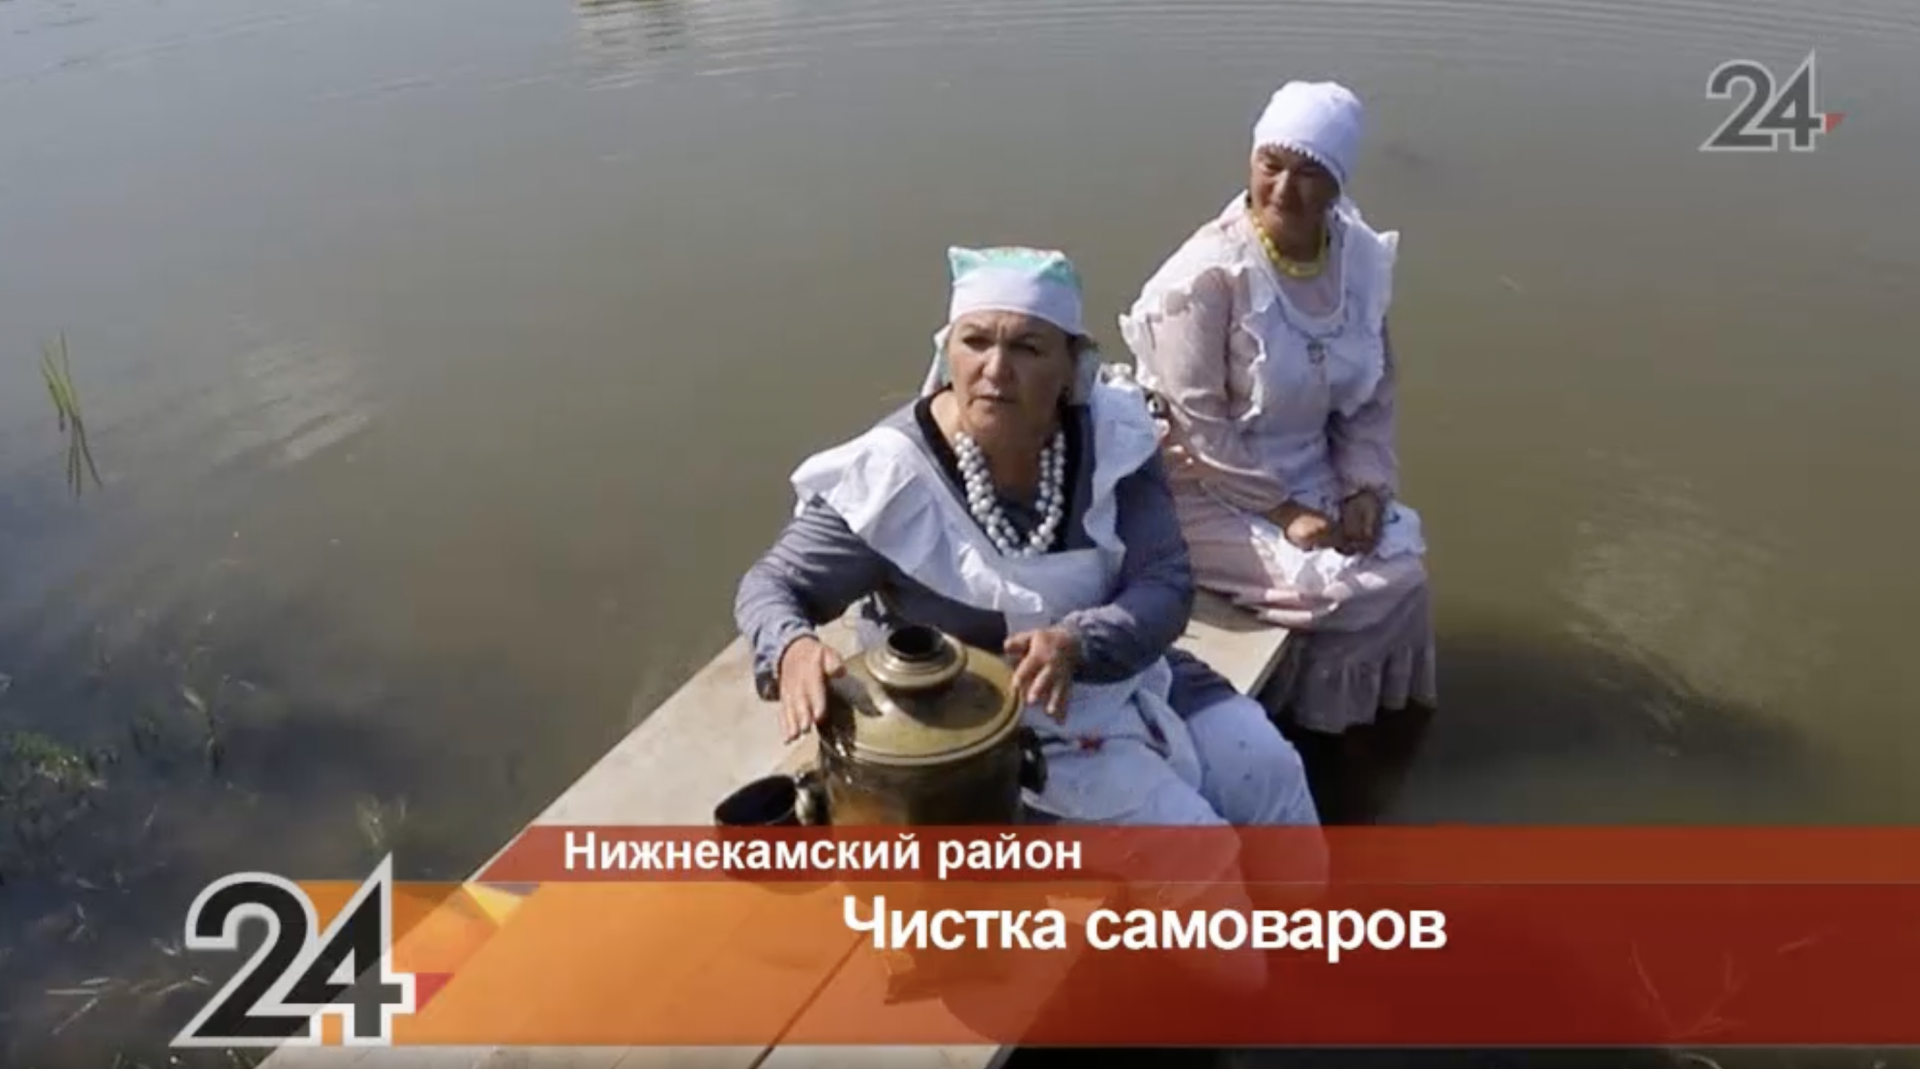 С песнями и плясками: в Татарстане селяне поделились традицией чистки самоваров